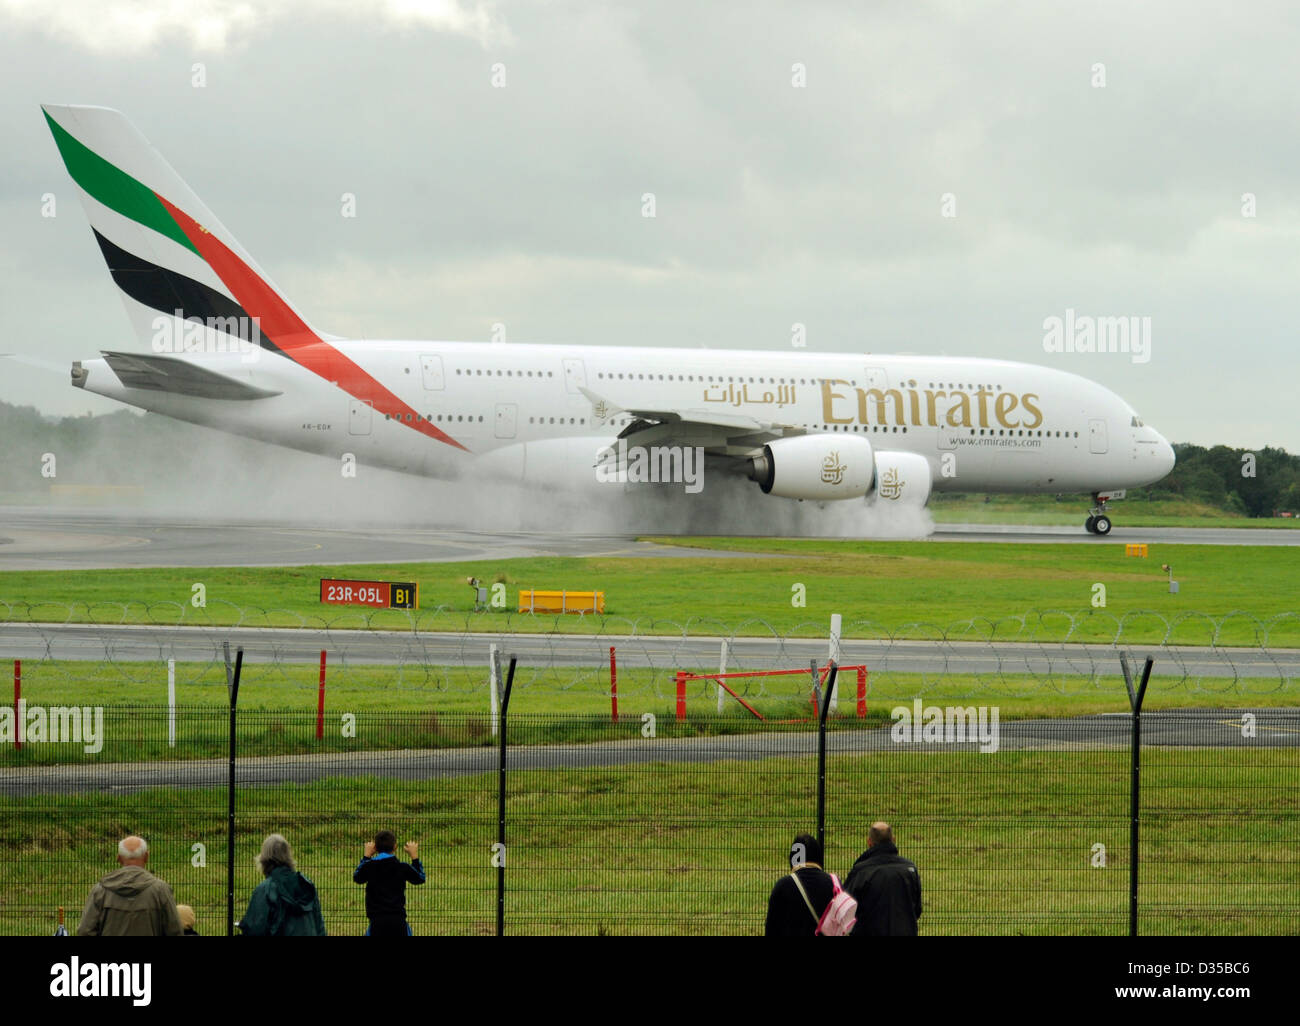 Persone e appassionati di aerei guarda la Emirates Airlines Airbus A380 861 E6 EDK atterrare su una pista bagnata all'Aeroporto di Manchester Foto Stock